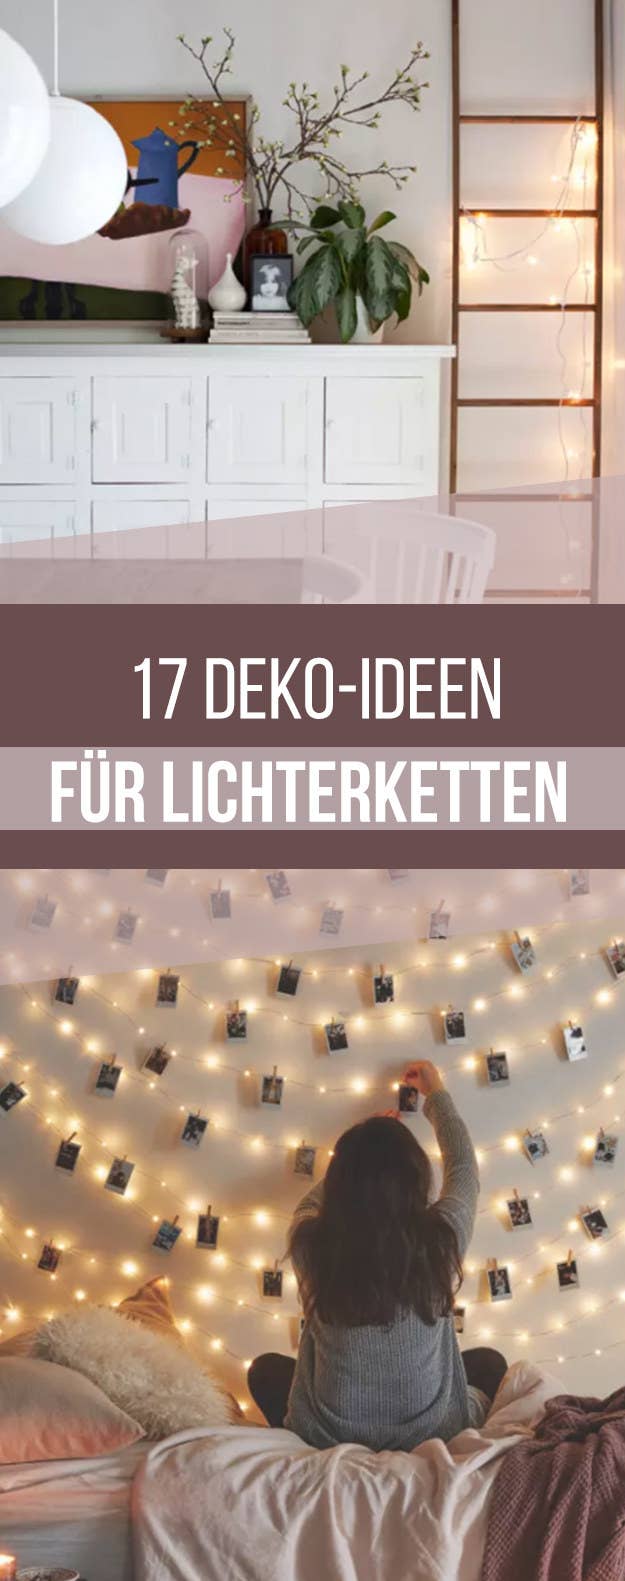 17 Moglichkeiten Wie Du Jede Ecke Deiner Wohnung Mit Lichterketten Dekorieren Kannst